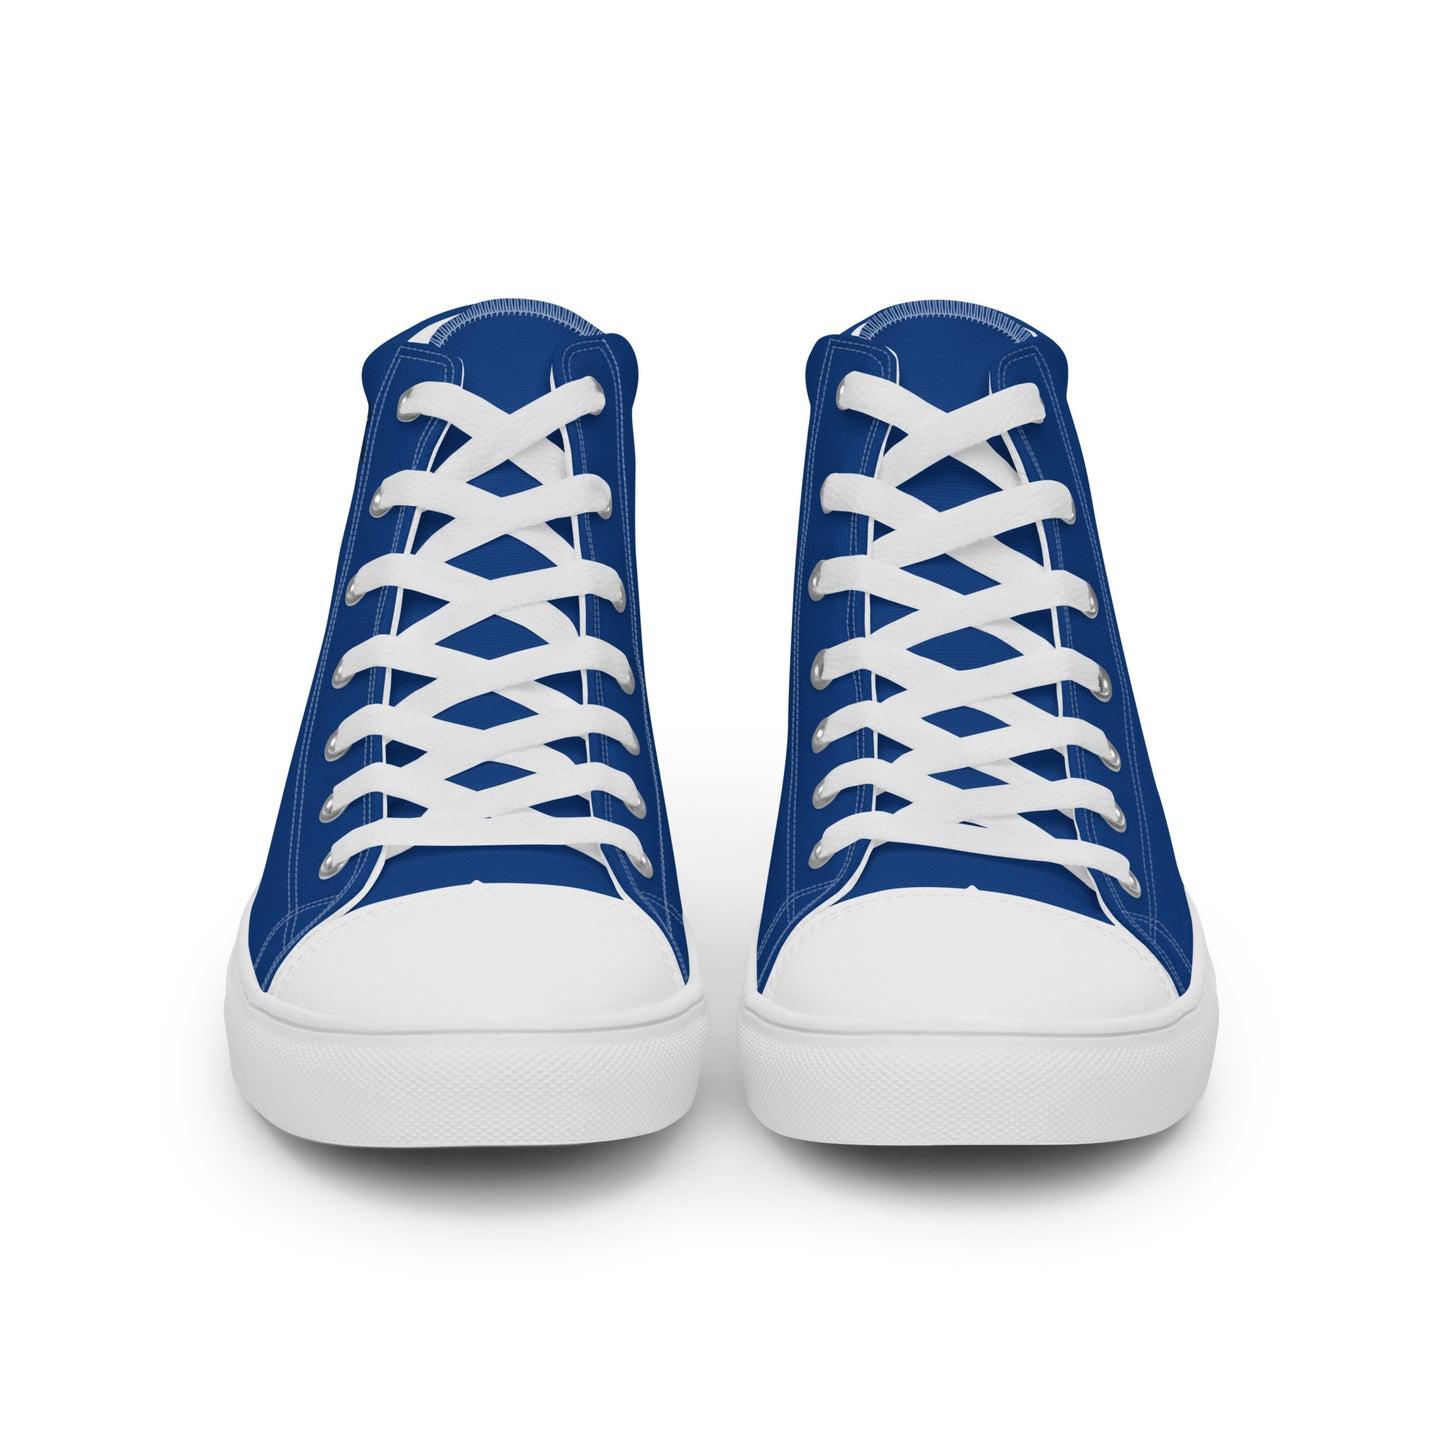 República Dominicana - Women - Blue - High top shoes